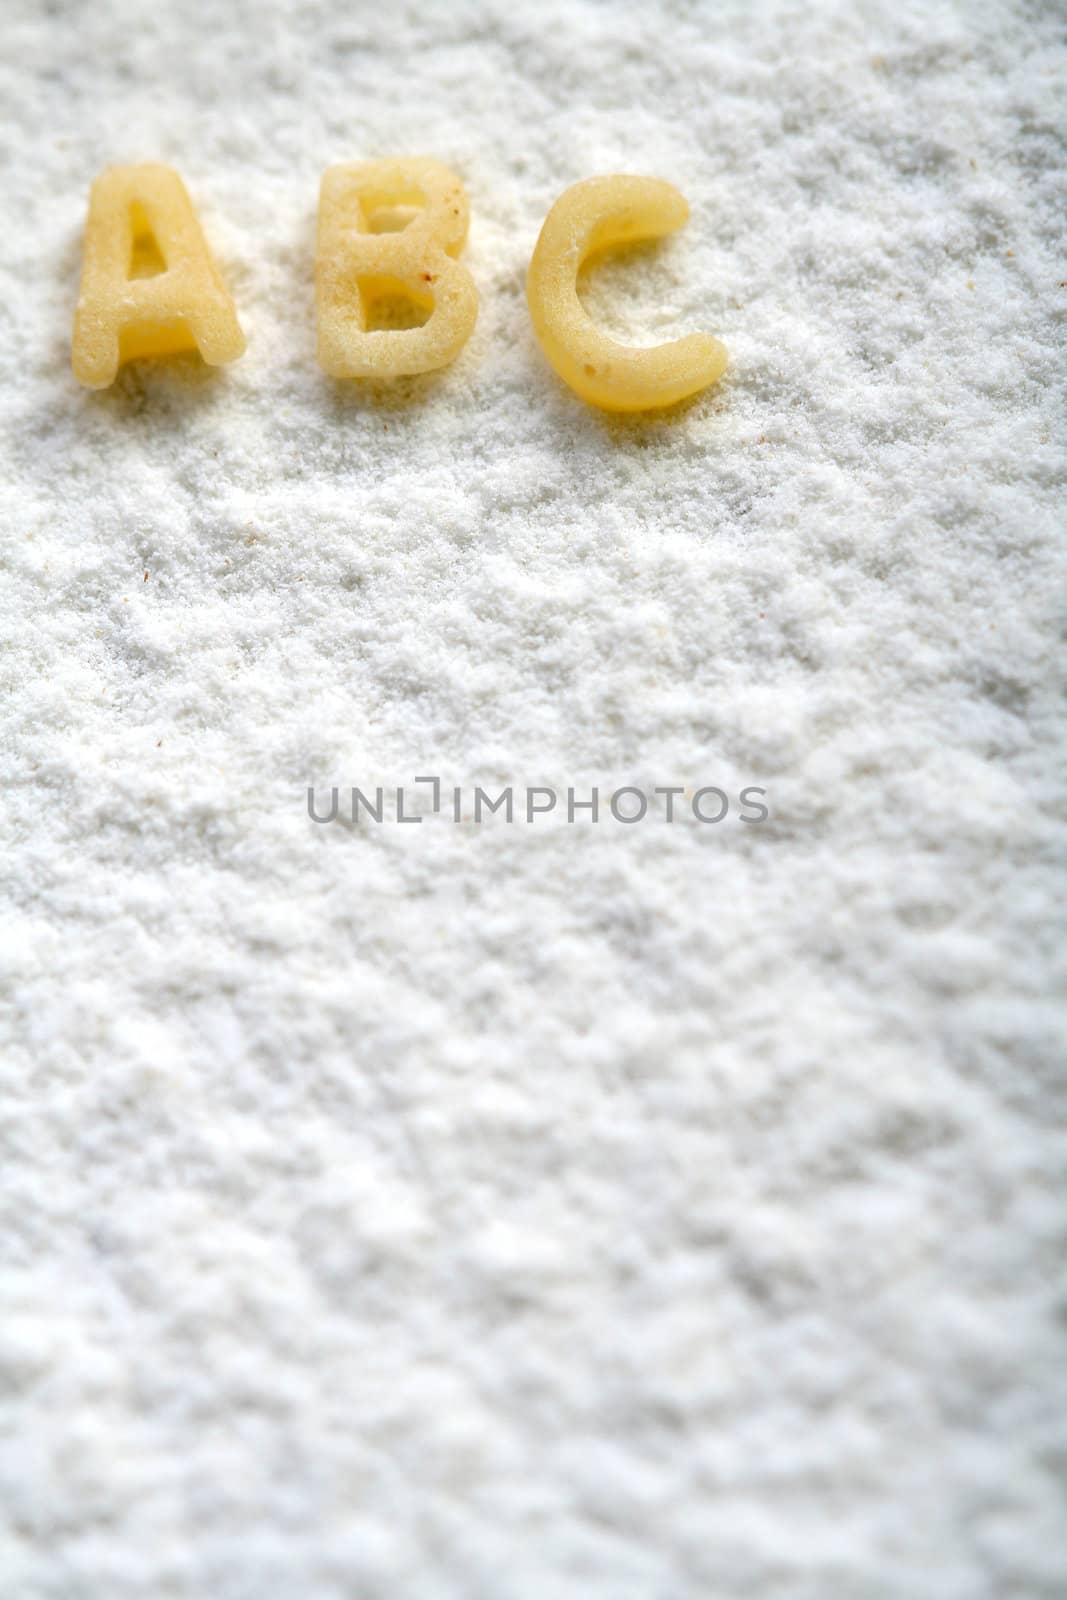 eatable alphabet on flour, education, background